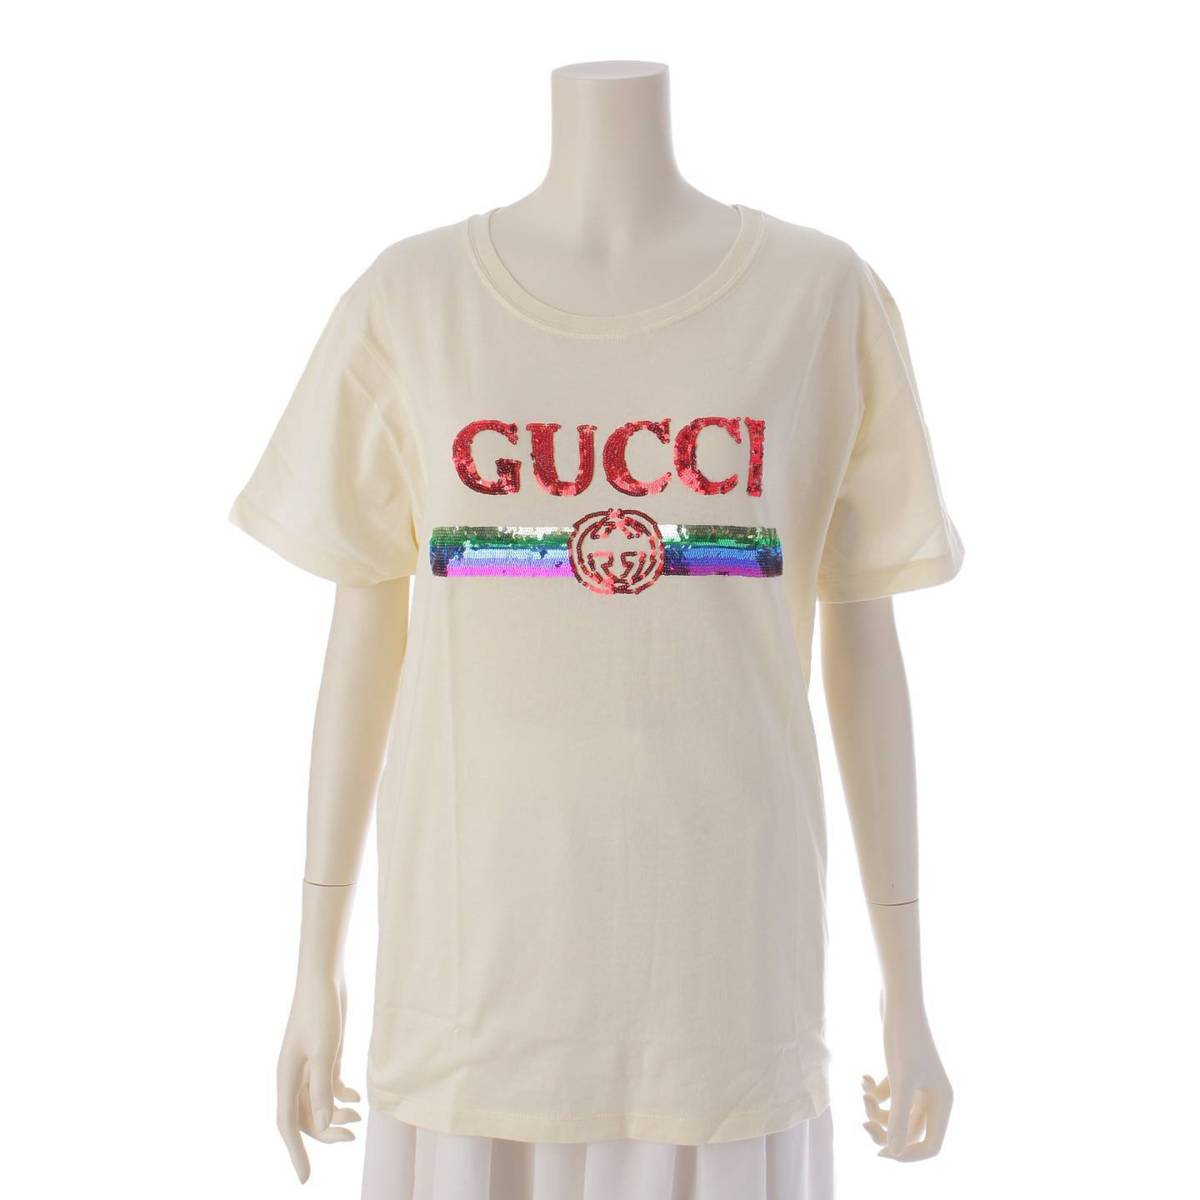 グッチ(Gucci) ディズニーコラボ オーバーサイズ Tシャツ ミッキー